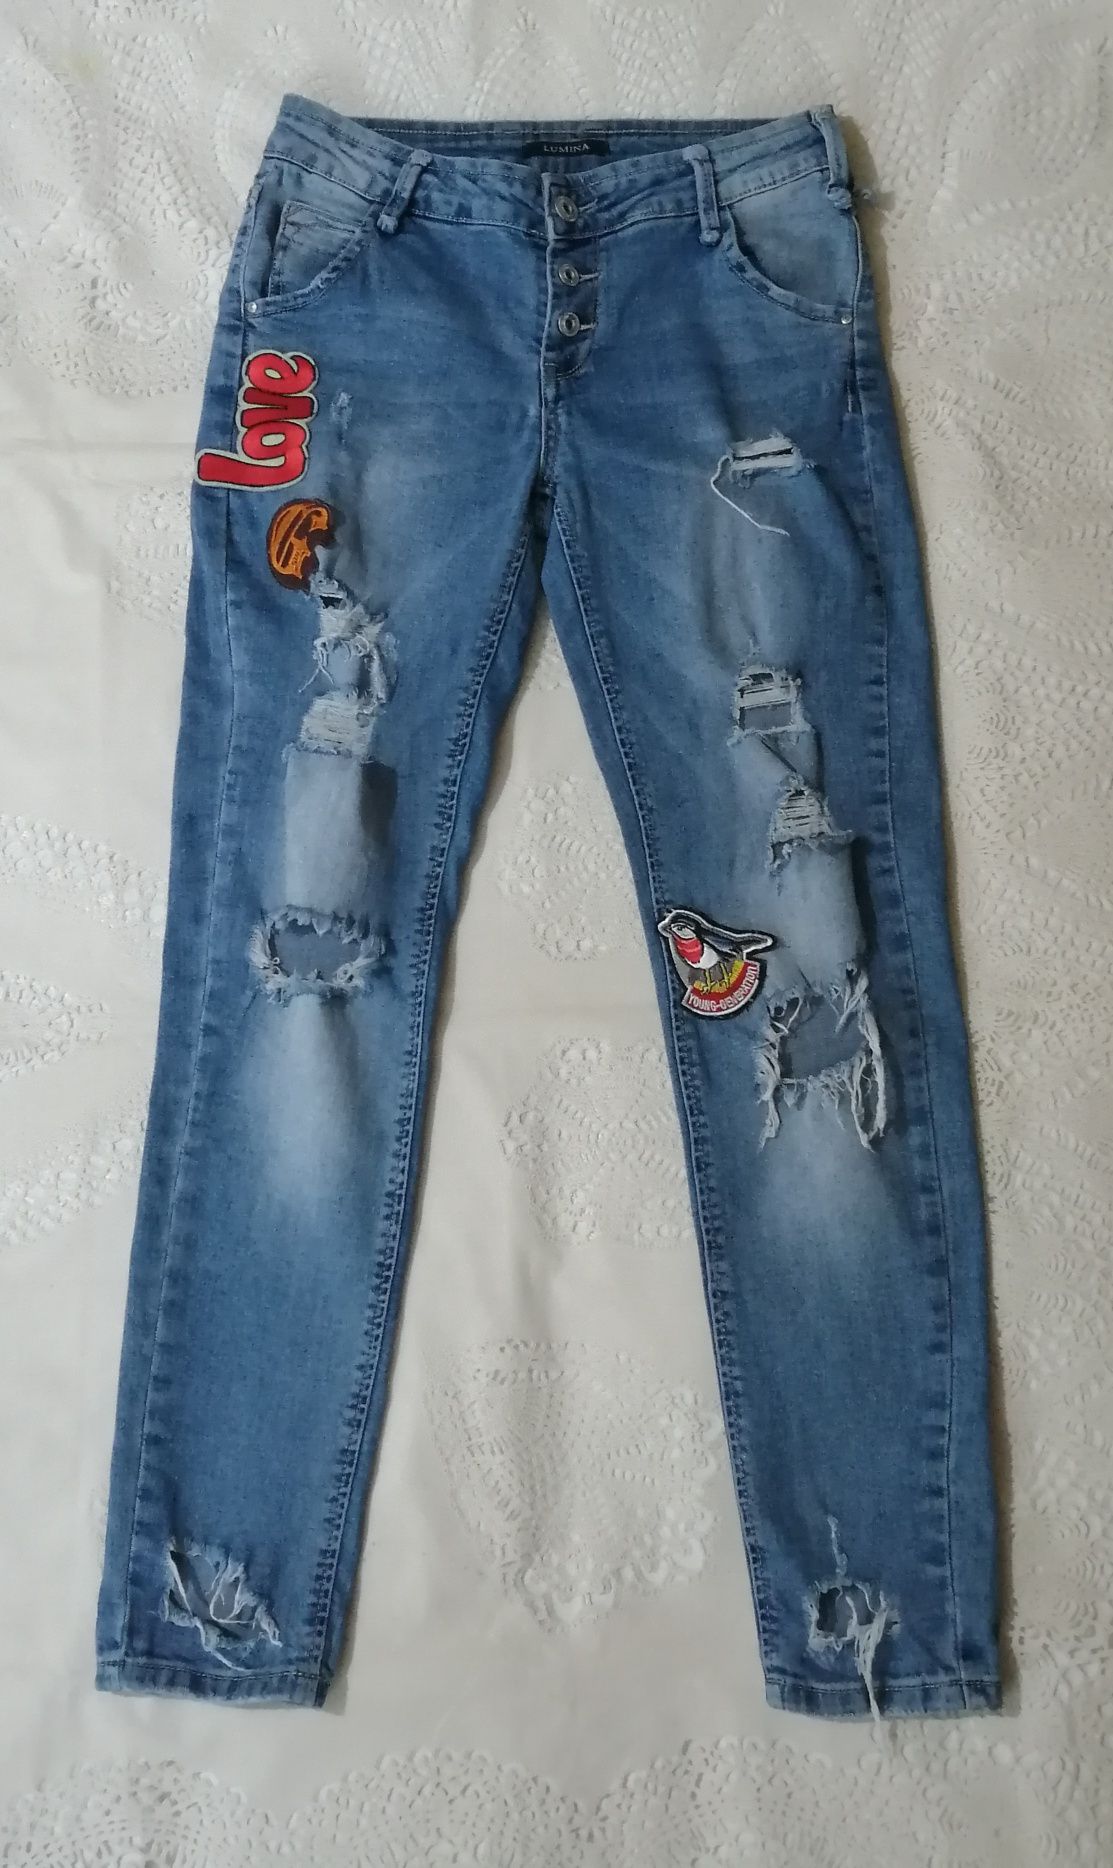 Продаю джинсы-рванки